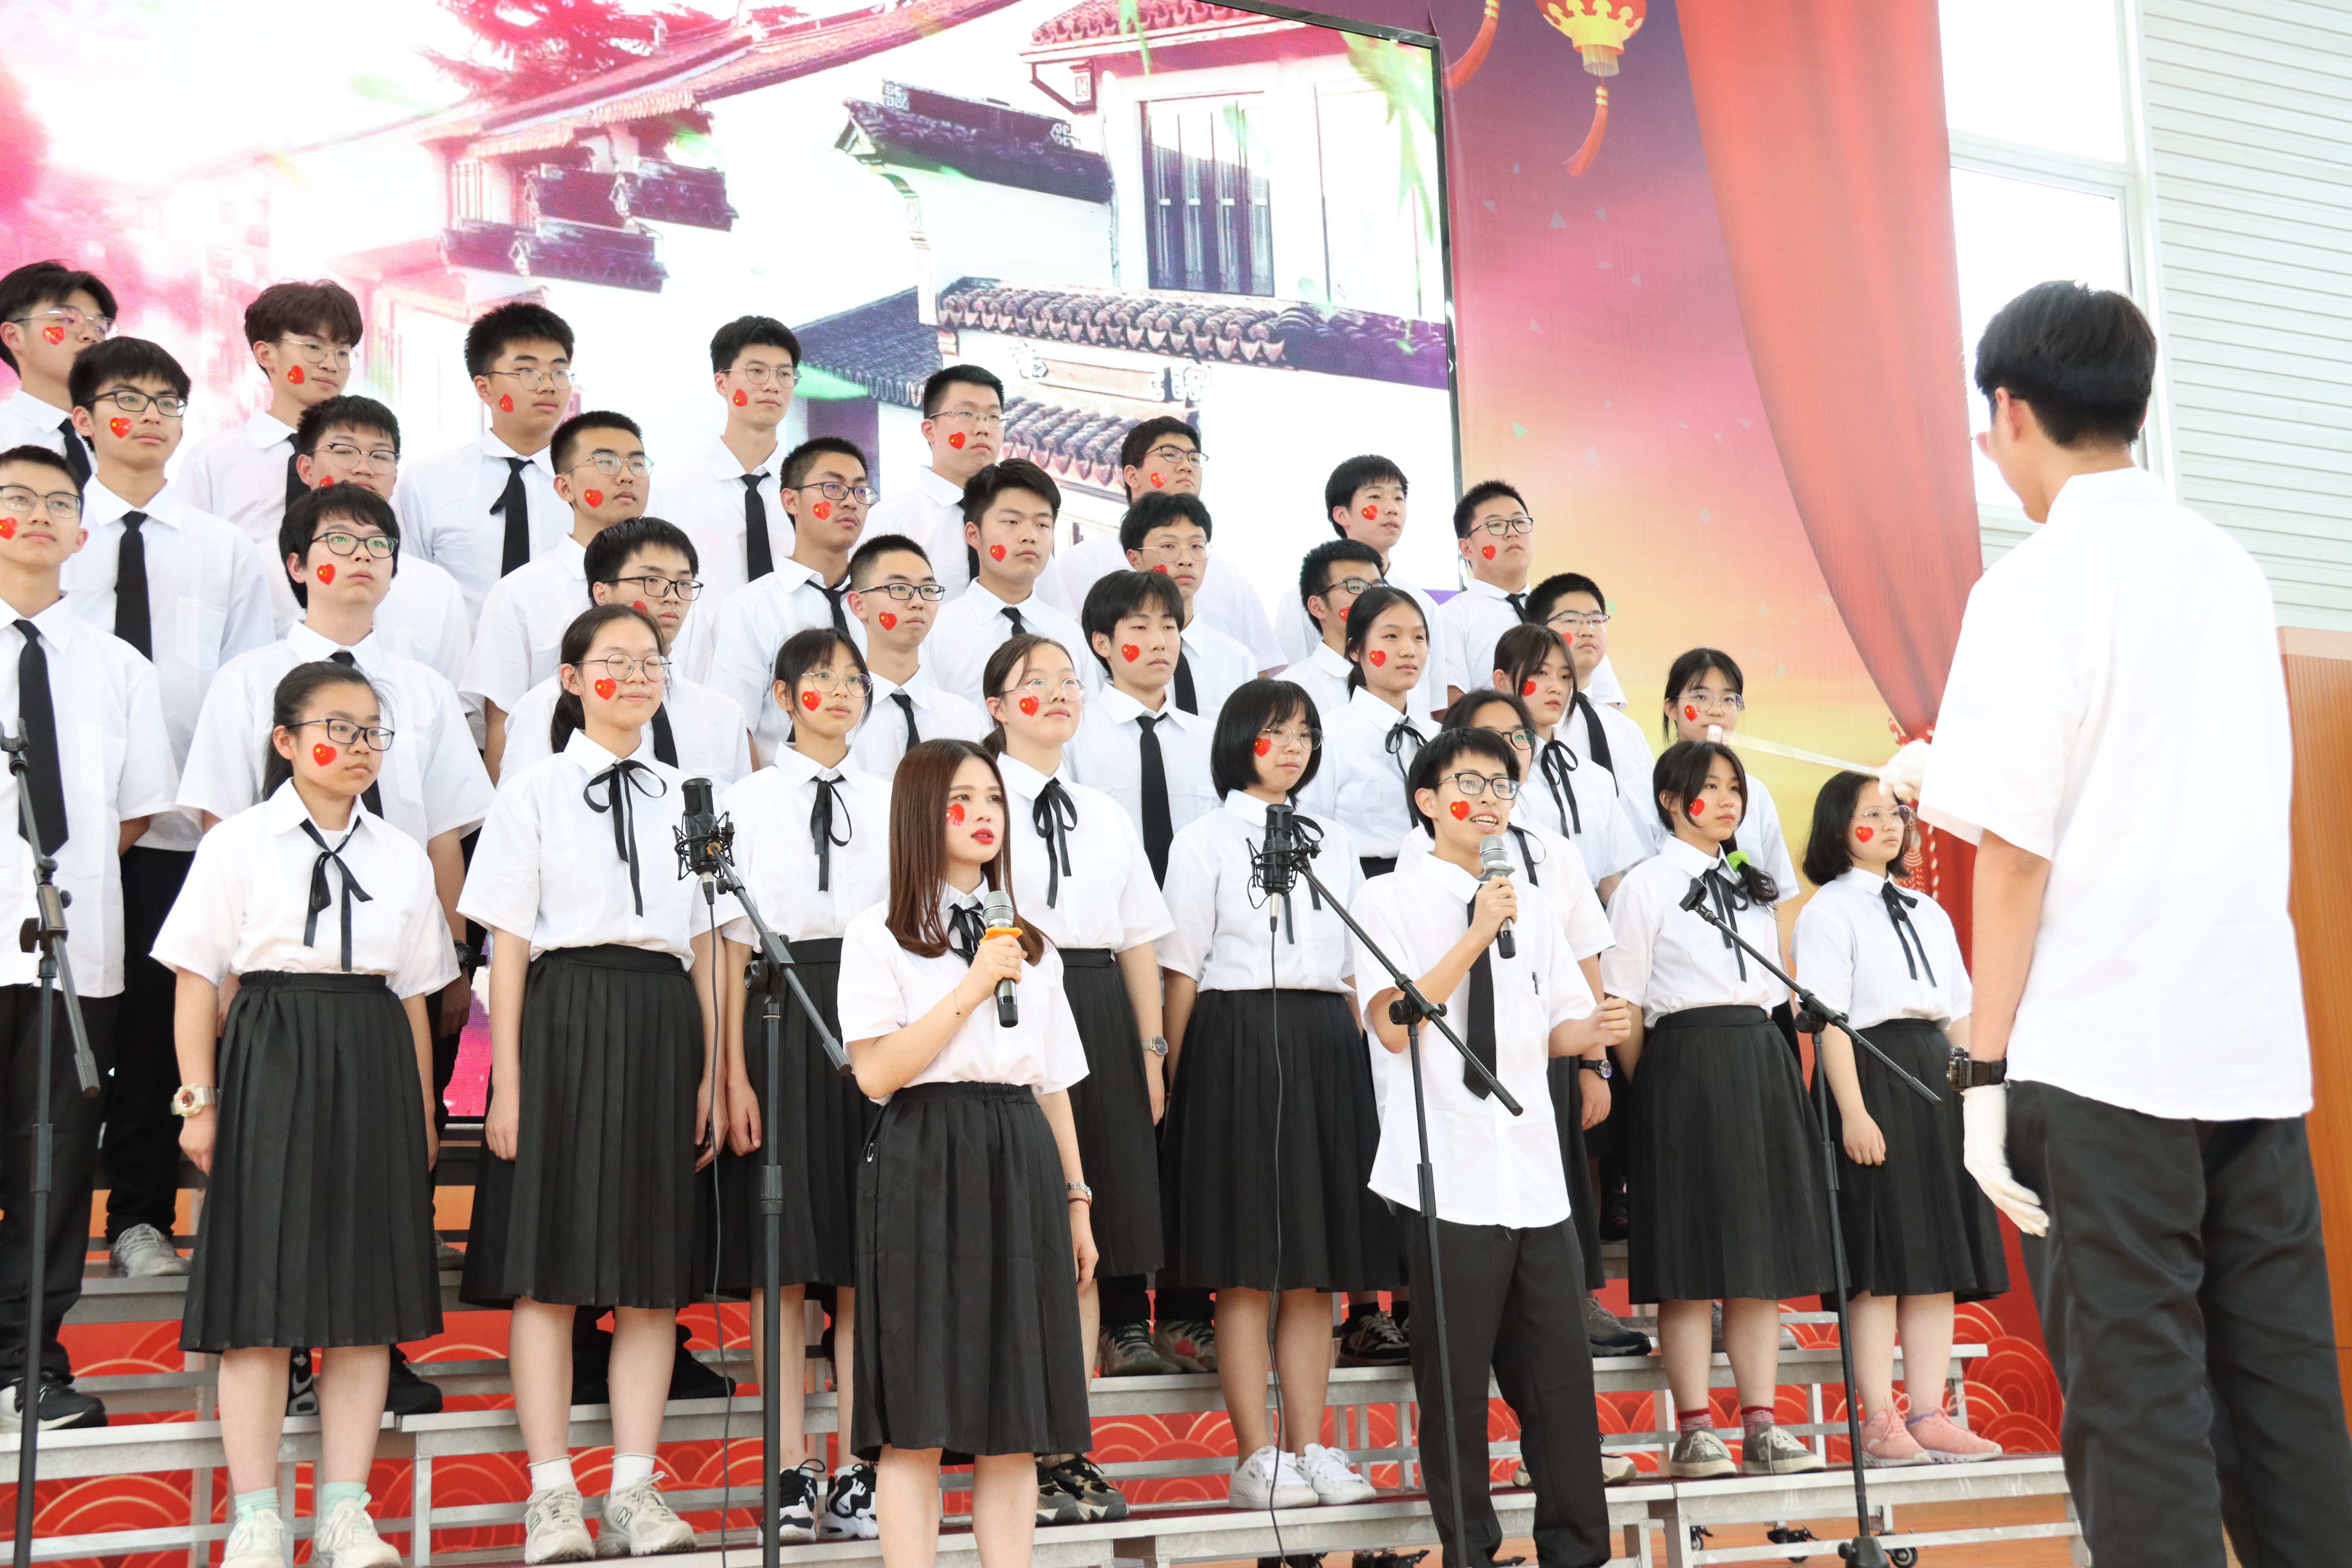 青春心向党,红歌颂百年 ——钱清中学举行红五月红歌合唱比赛